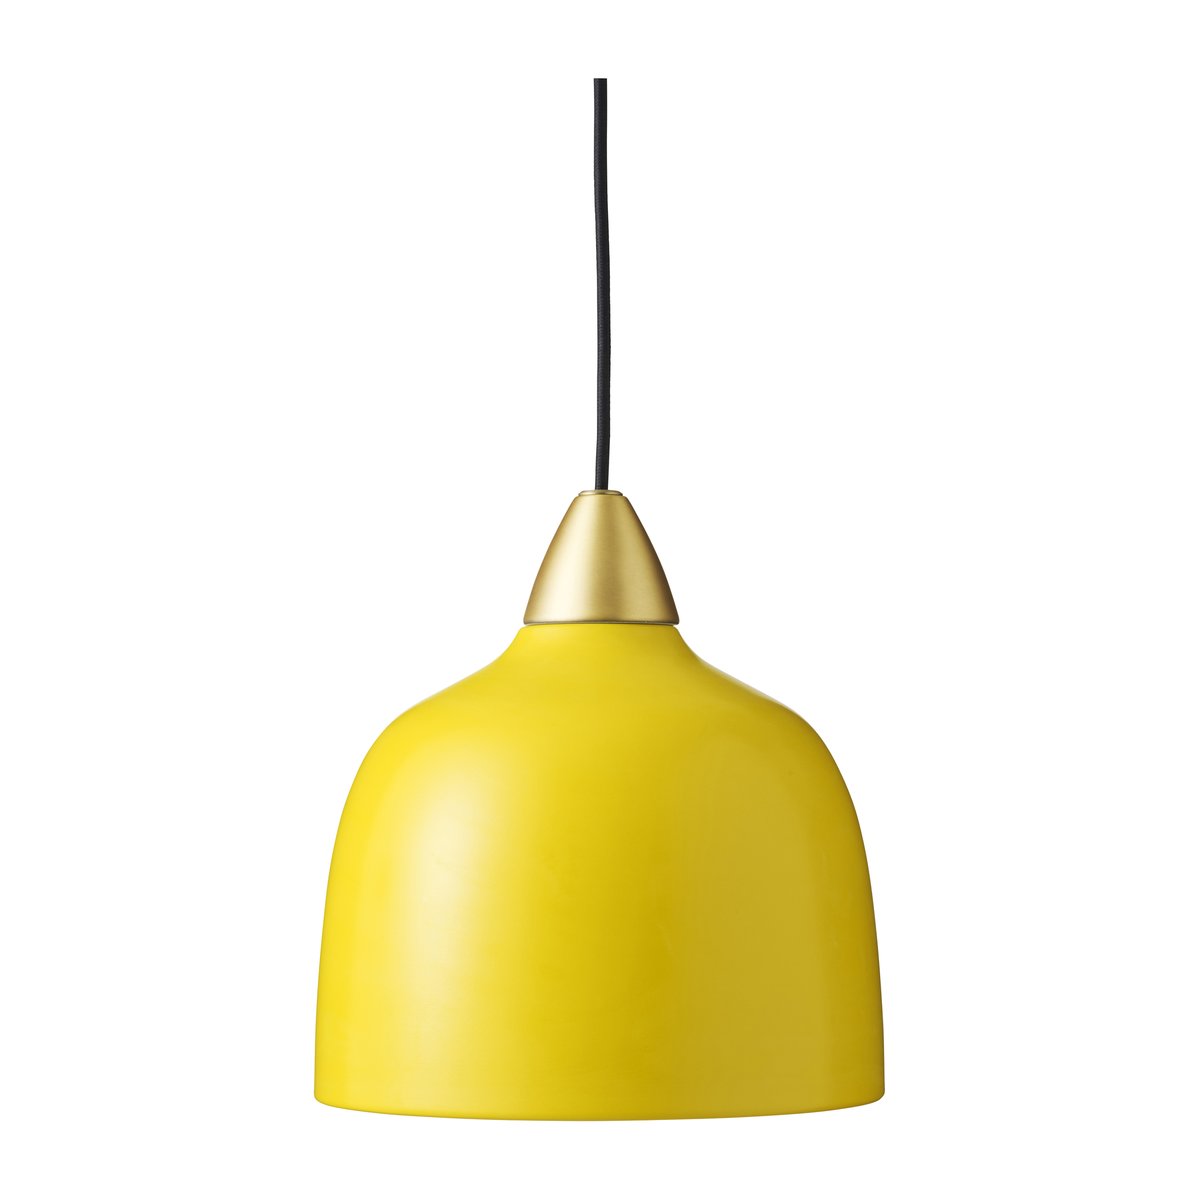 Superliving Urban hanglamp Amber (geel)